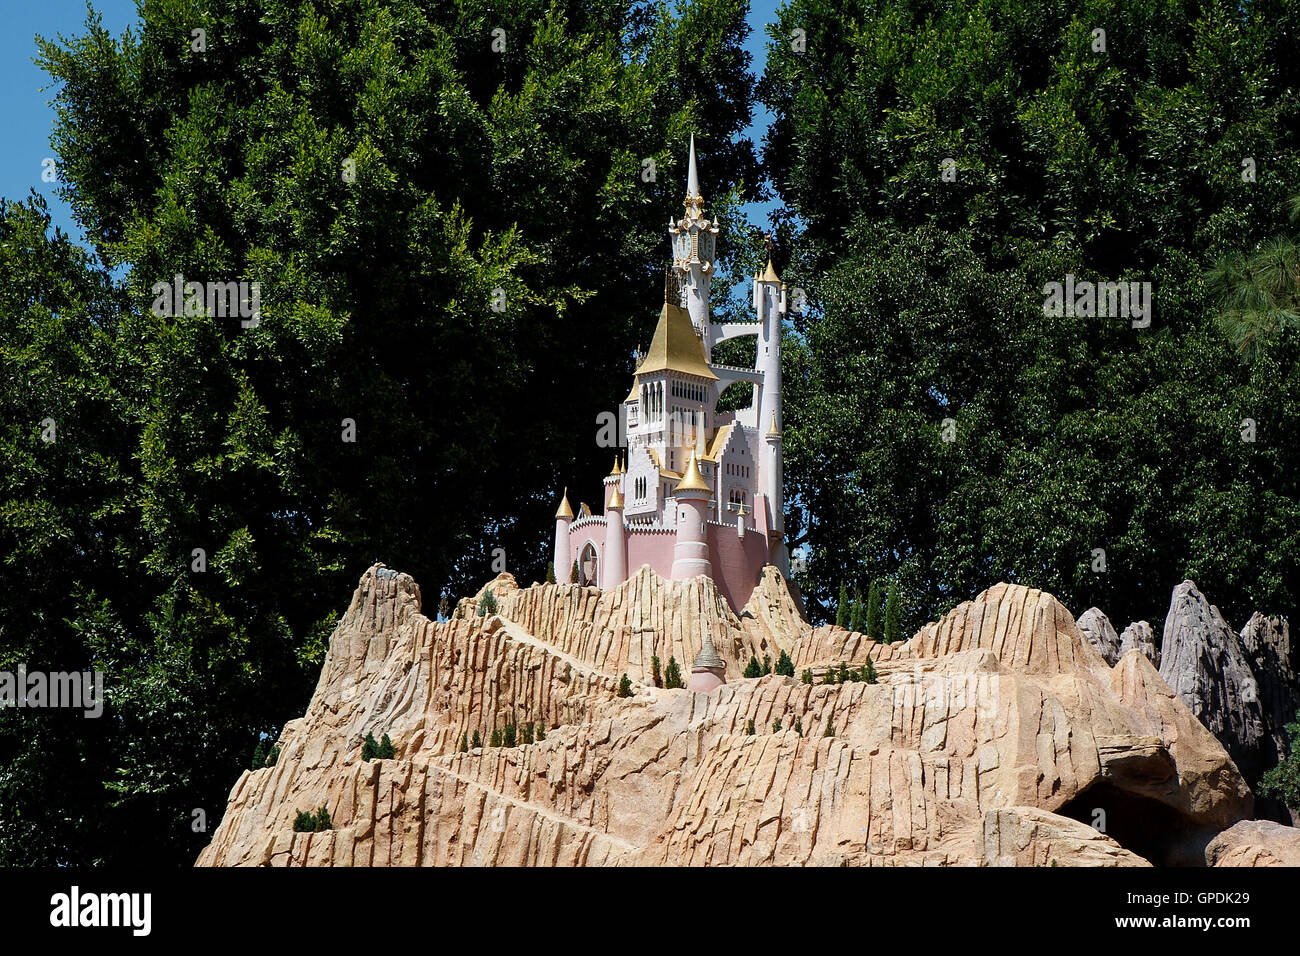 Burg-Anzeige auf der Fahrt von Storybook Land Kanalboote, Disneyland Resort Anaheim, California, Vereinigte Staaten von Amerika Stockfoto